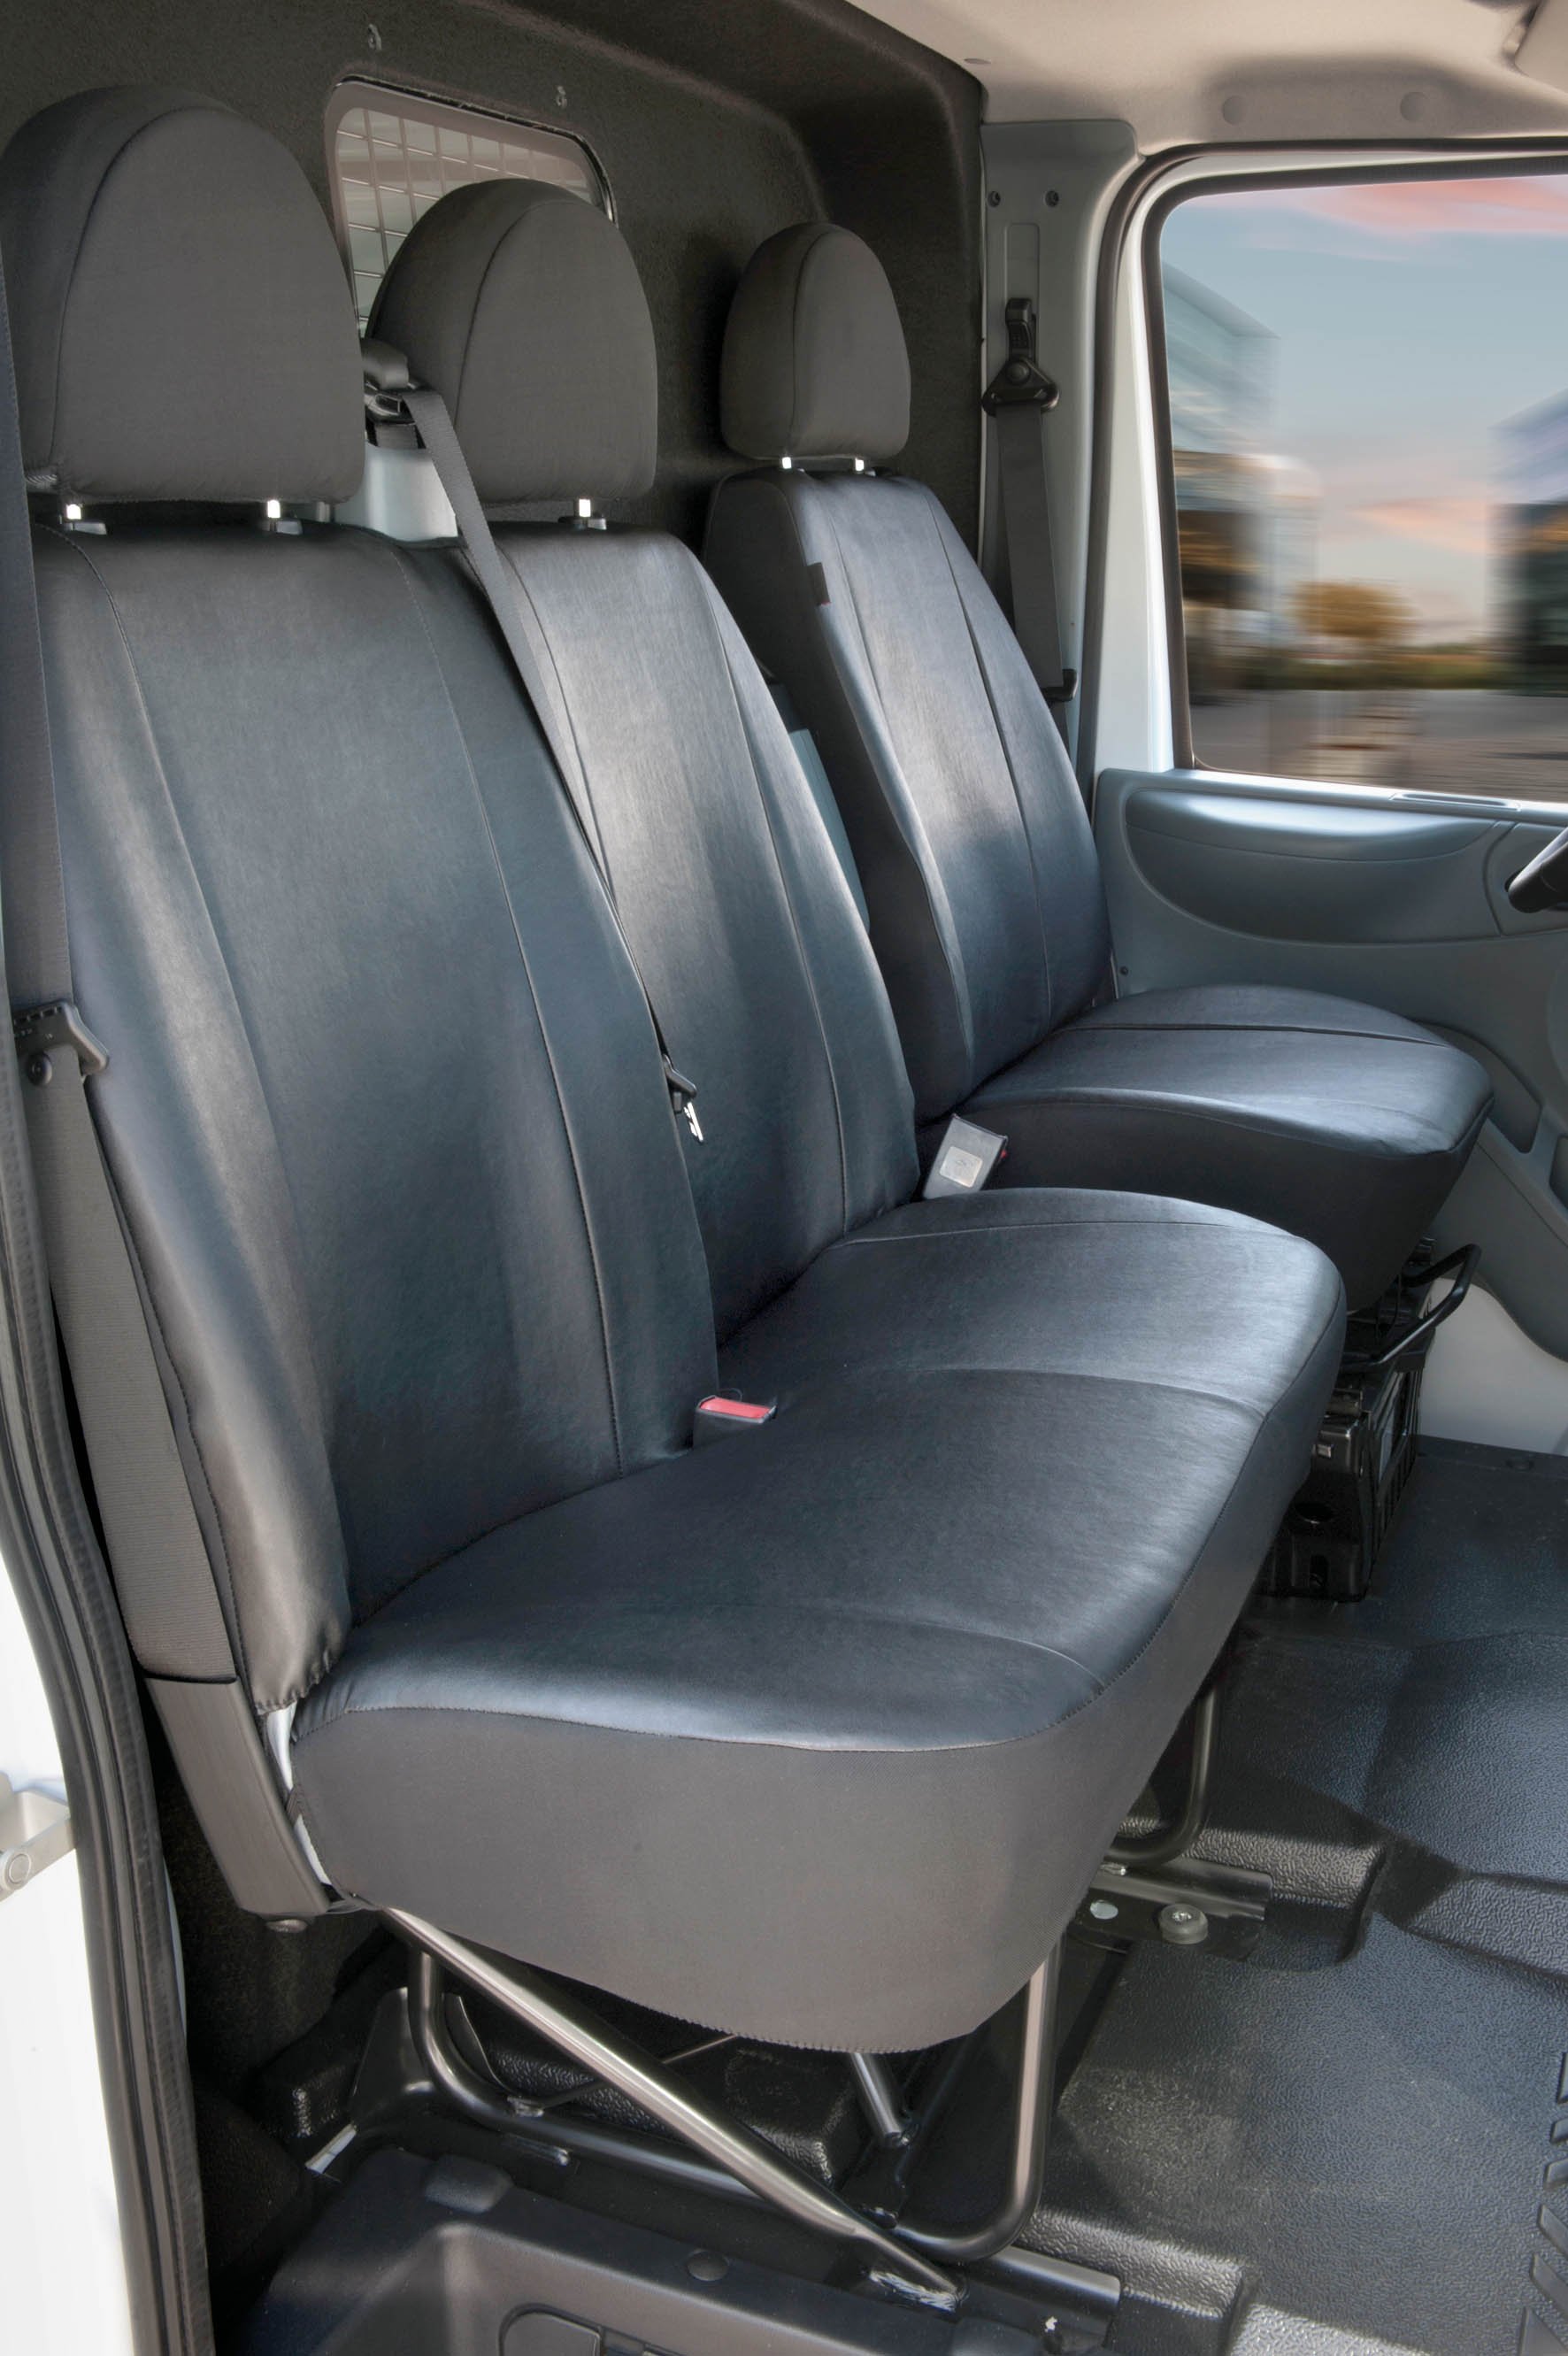 Housse de siège Transporter en simili cuir pour Ford Transit, siège simple et double